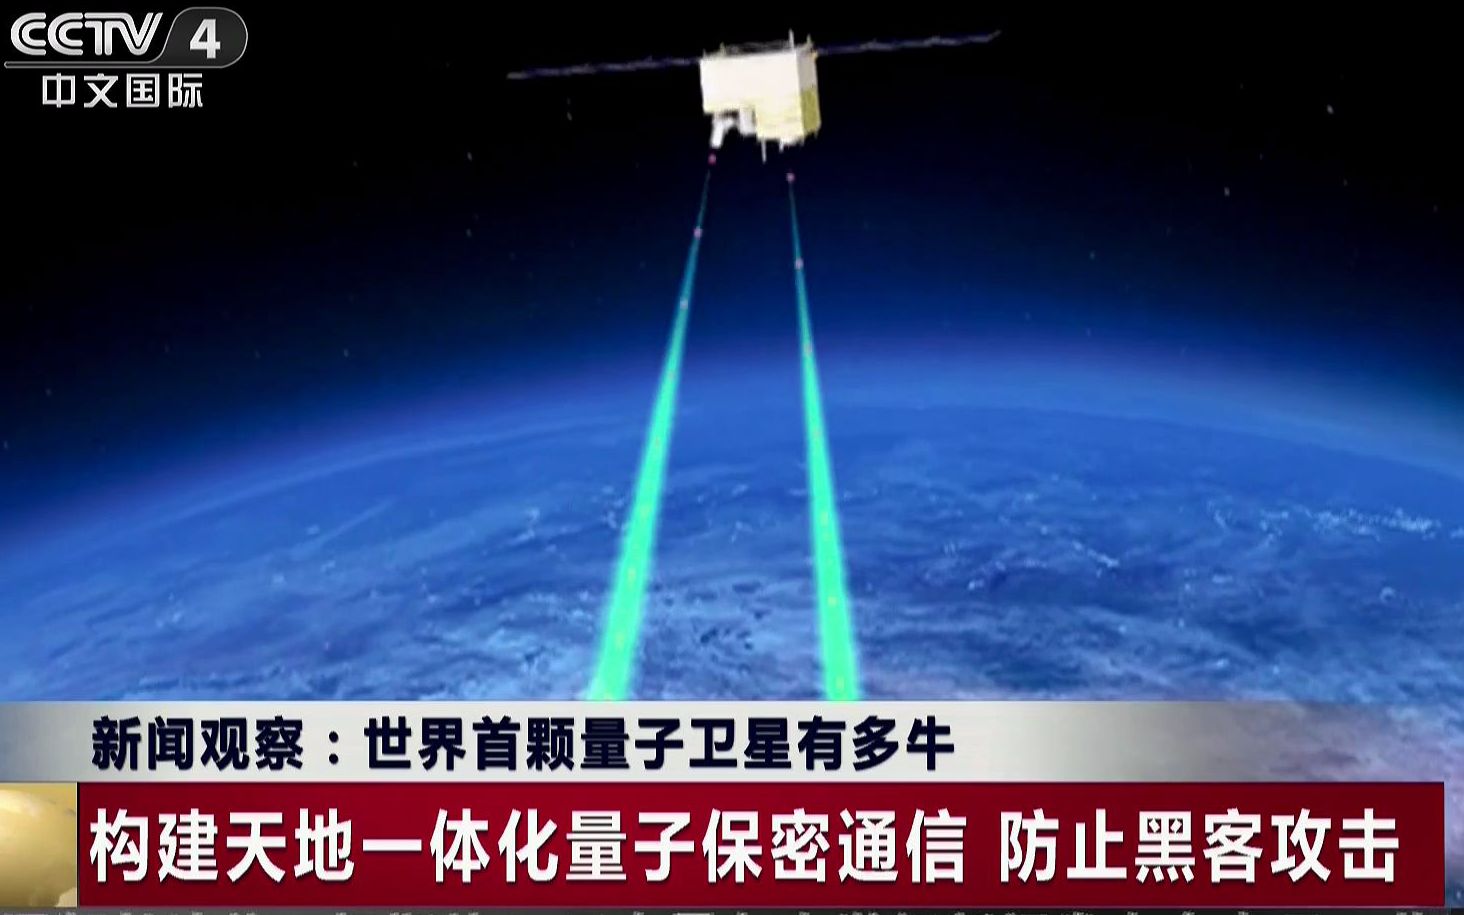 我国成功发射世界首颗量子科学实验卫星“墨子号”和稀薄大气科学实验卫星----中国科学院微小卫星创新研究院